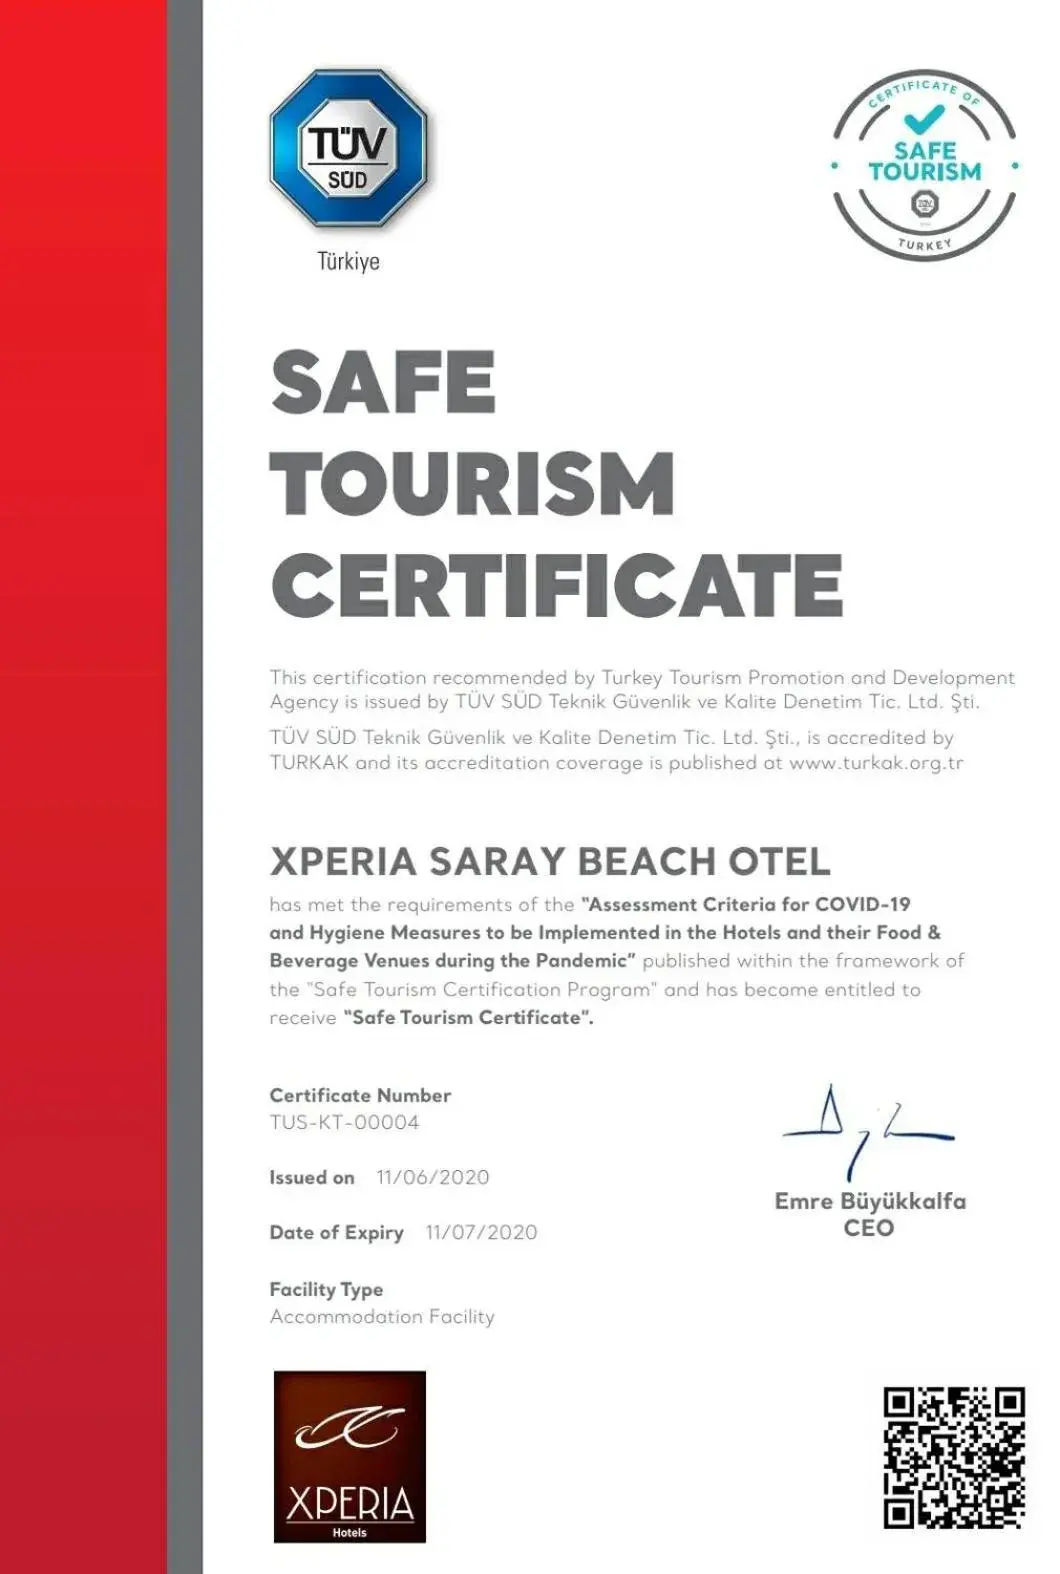 Certificate/Award in Xperia Saray Beach Hotel